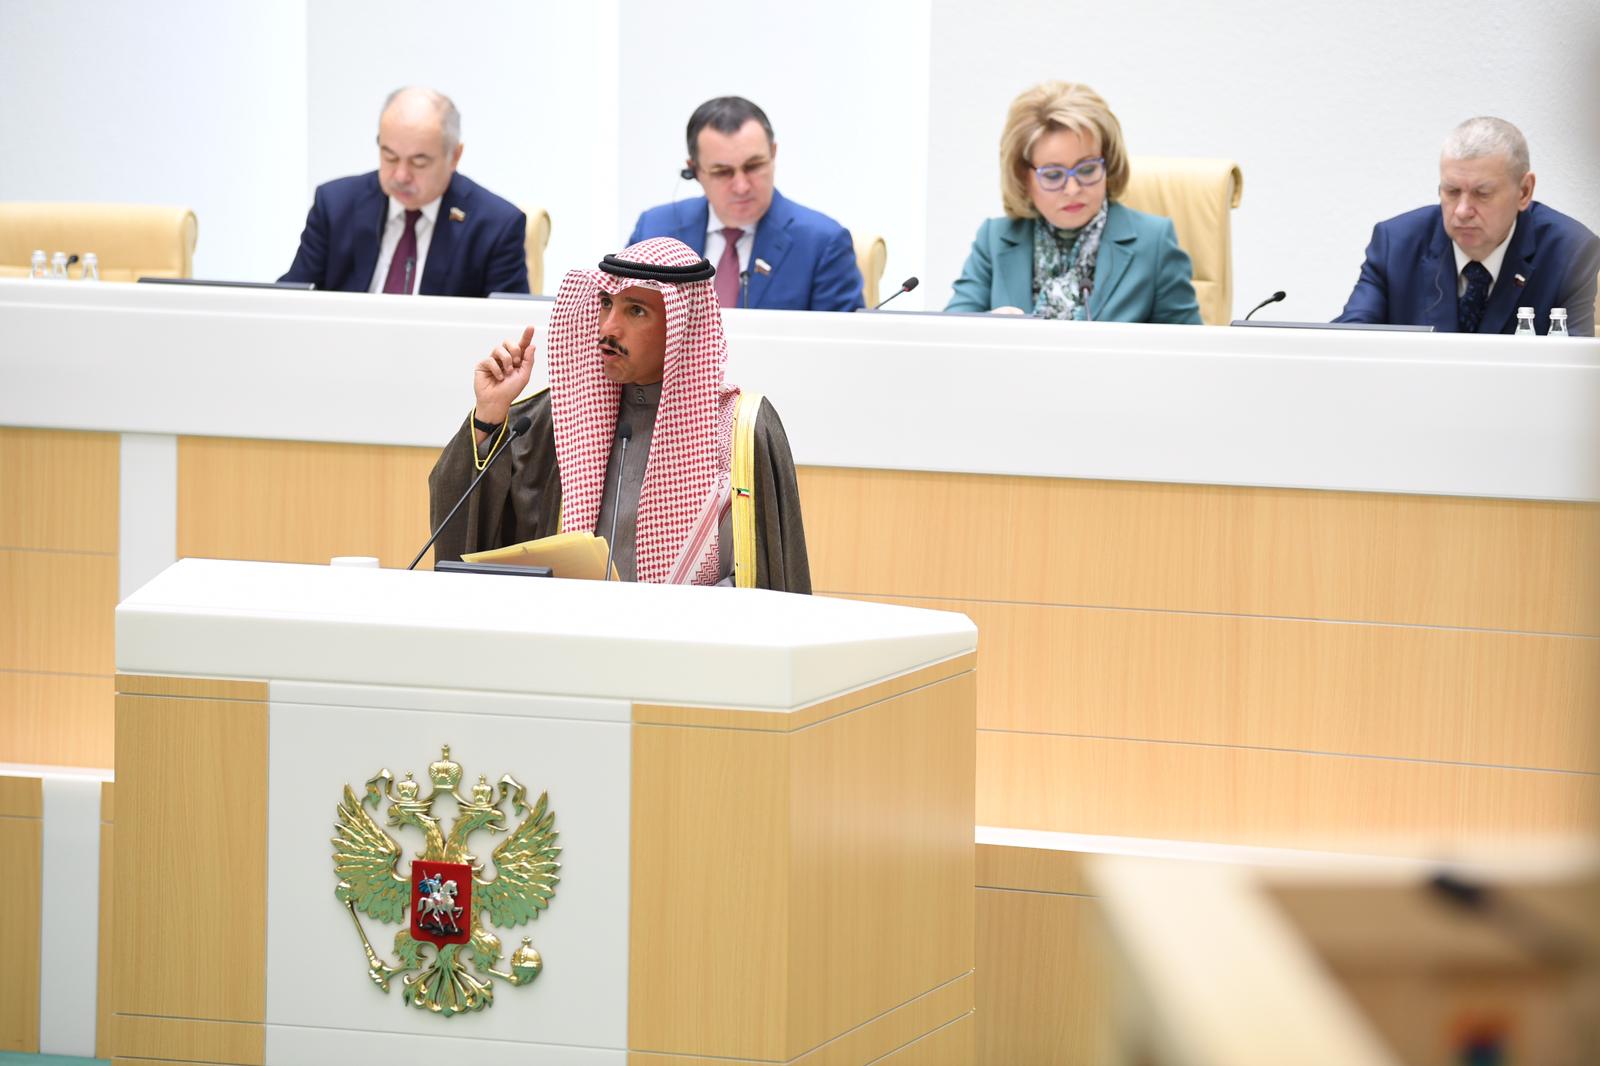 رئيس مجلس الأمة الكويتي مرزوق الغانم اثناء كلمته في الجلسة العامة للمجلس الفيدرالي الروسي (الغرفة الأعلى للبرلمان الروسي)